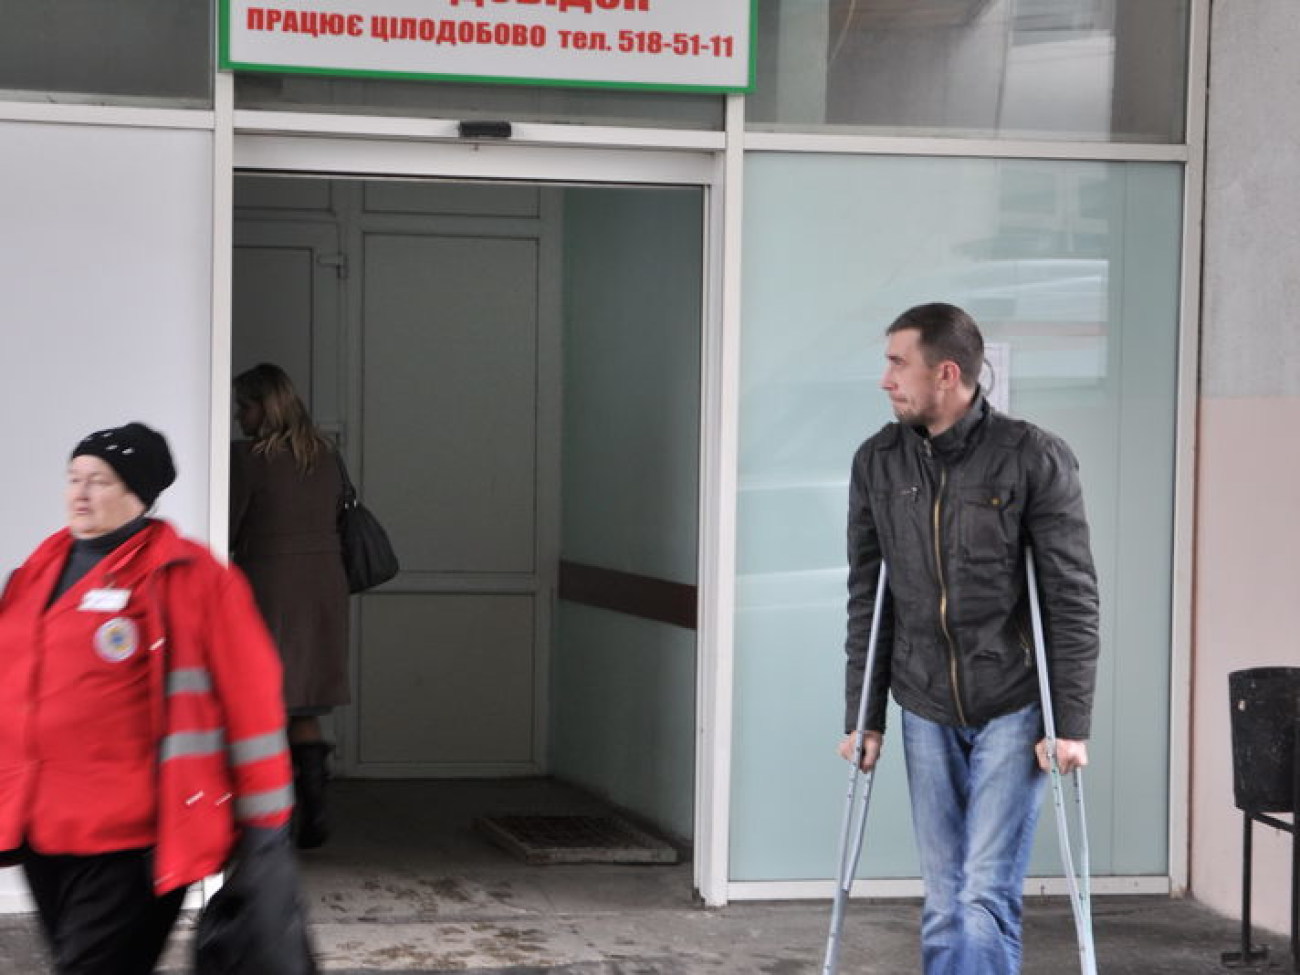 Киевская городская клиническая больница скорой помощи, 4 января 2013г.